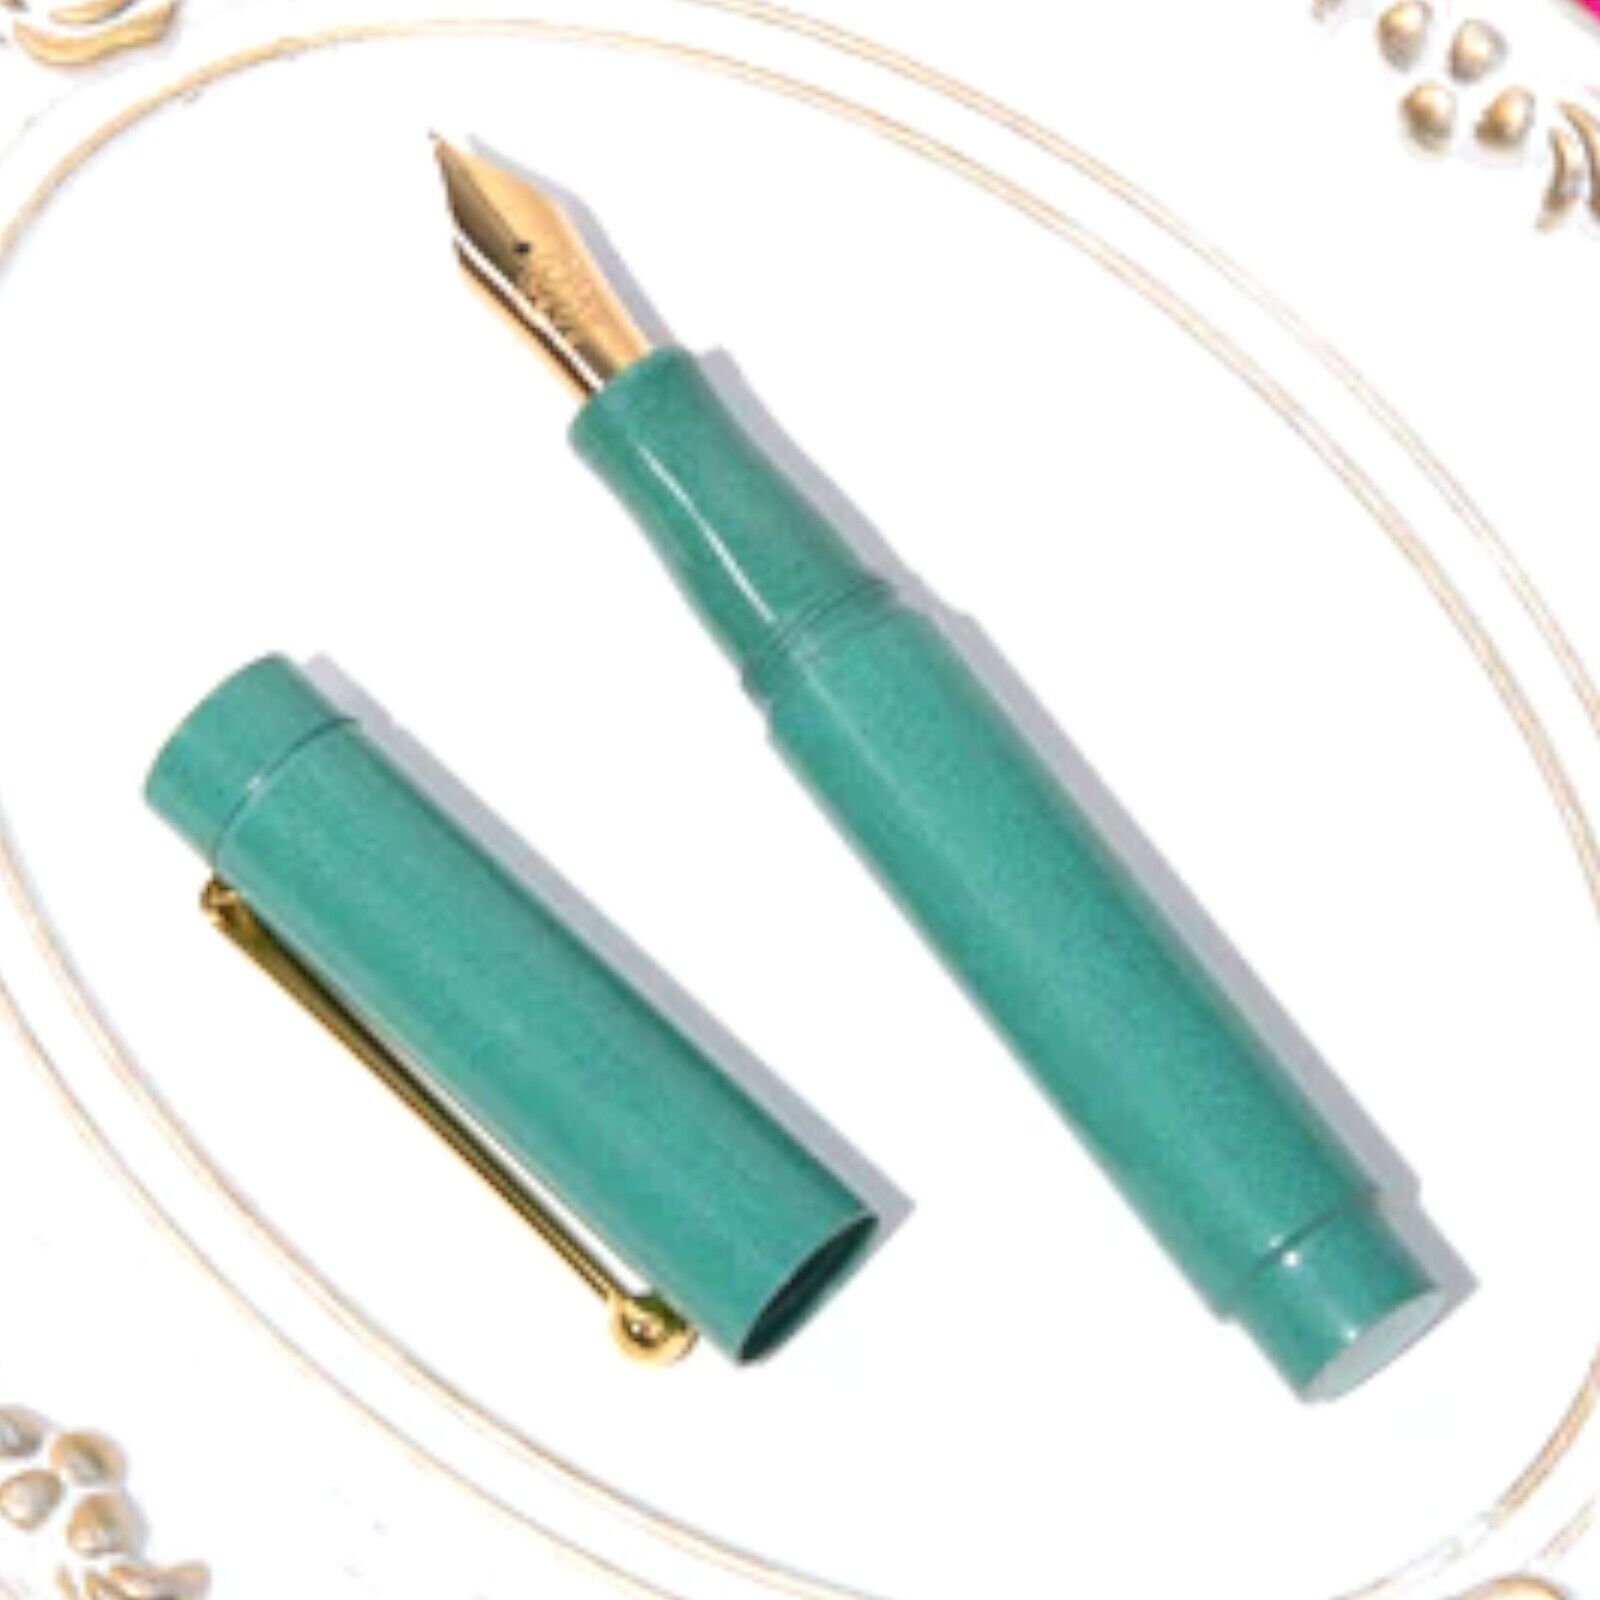 Eboya Tan-Pen Ebonite 14K Fountain Pen Kingfisher Jade Green M Nib NEW